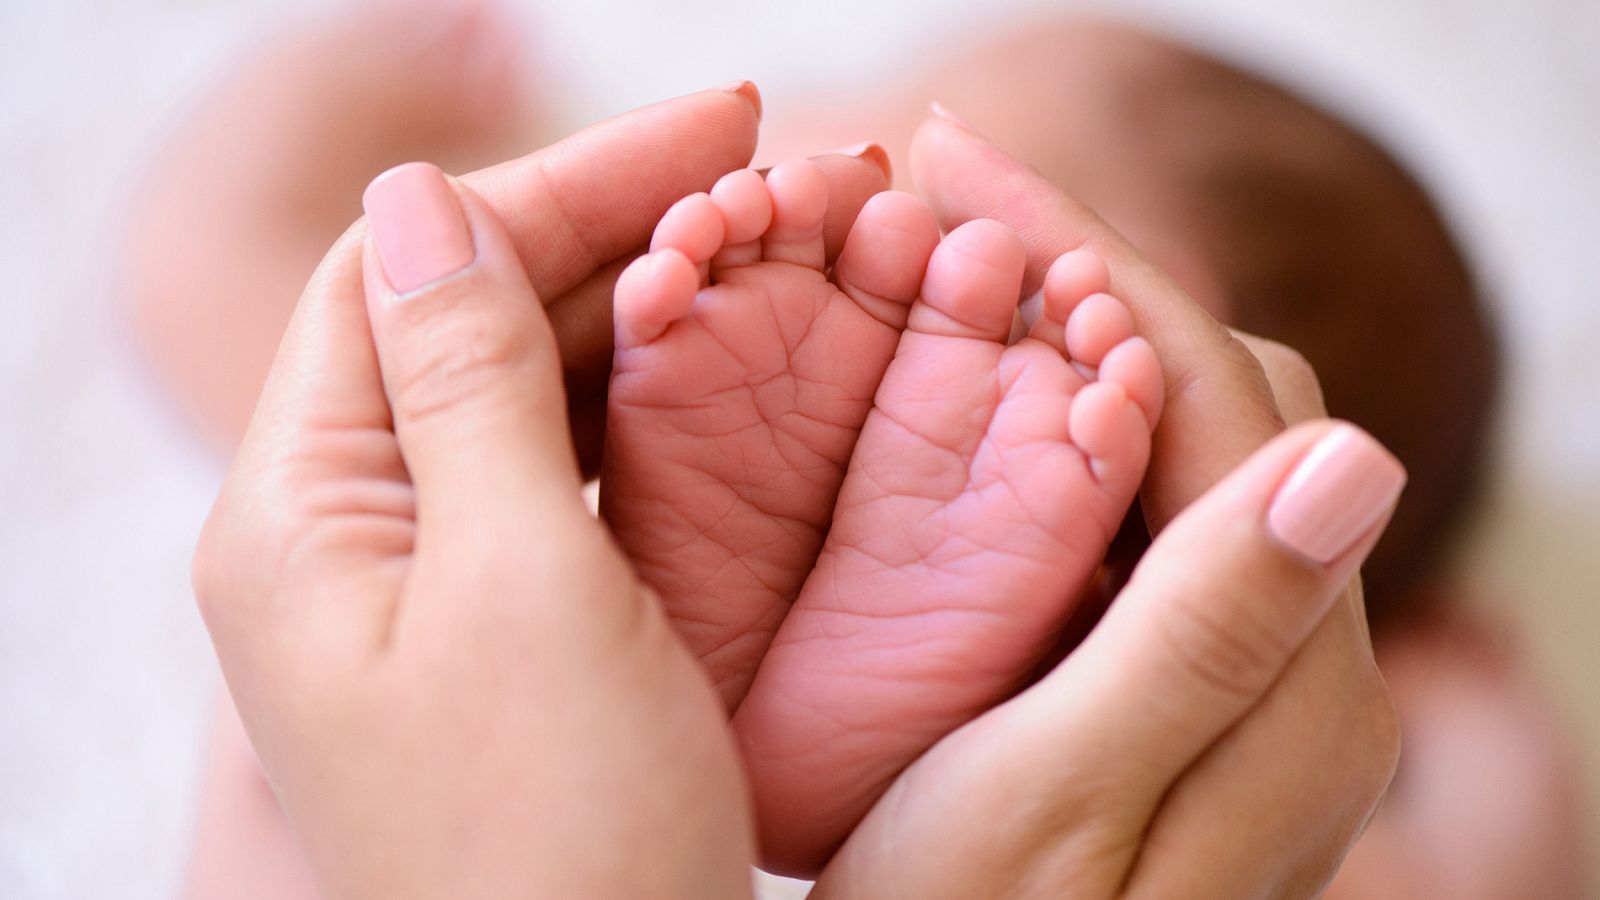 España e Italia son los dos países de la Unión Europea con tasas de natalidad más bajas